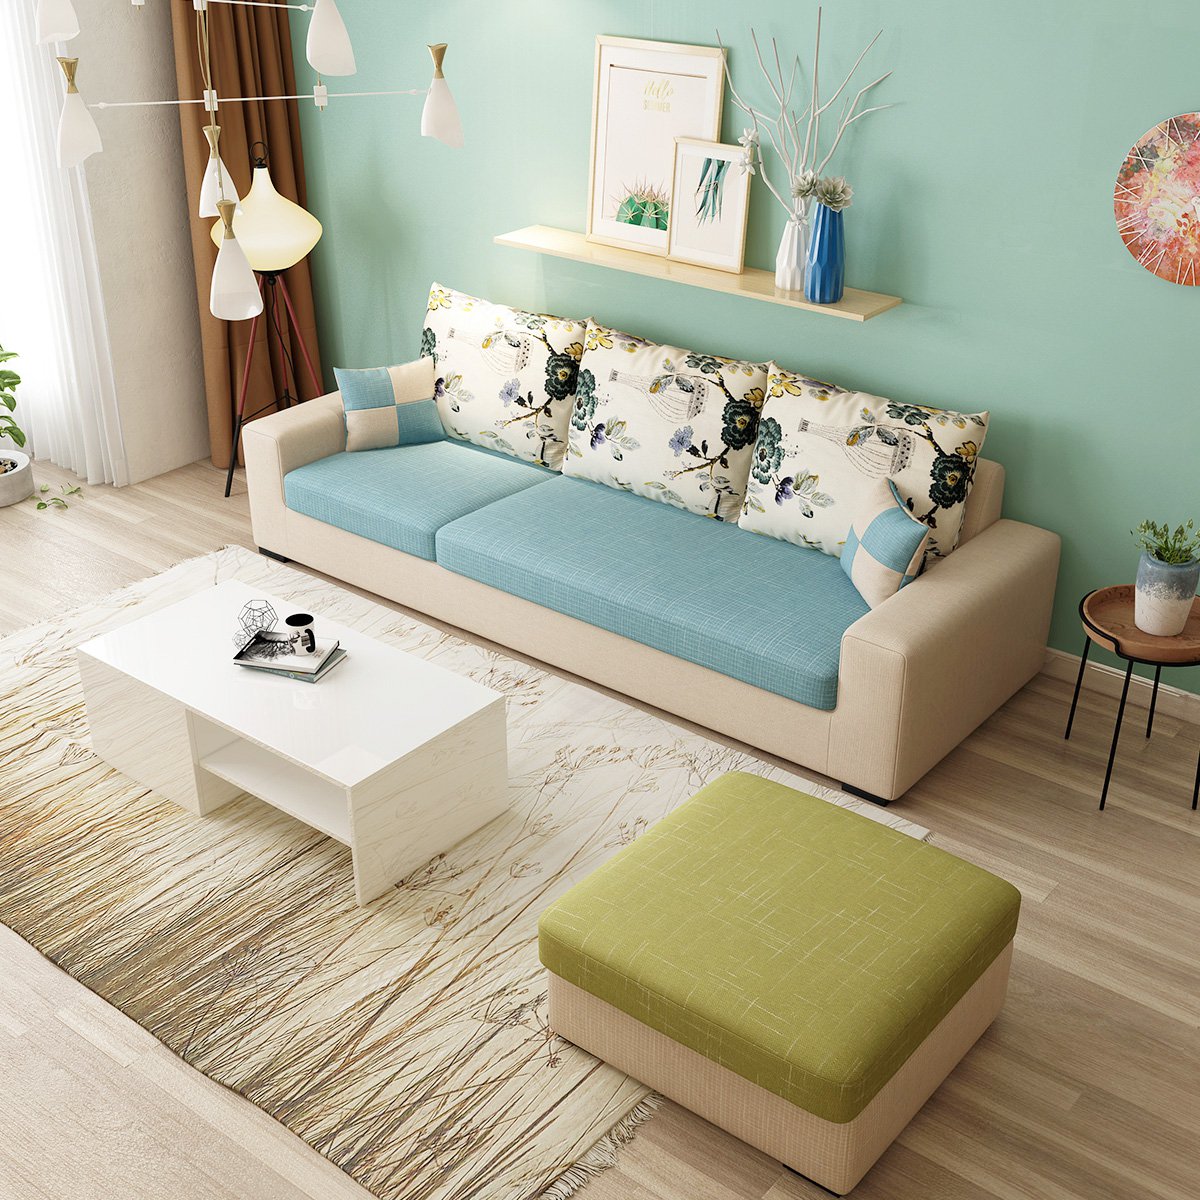 爆款时尚撞色沙发 现代简约布艺沙发小户型组合客厅整装可拆洗转角